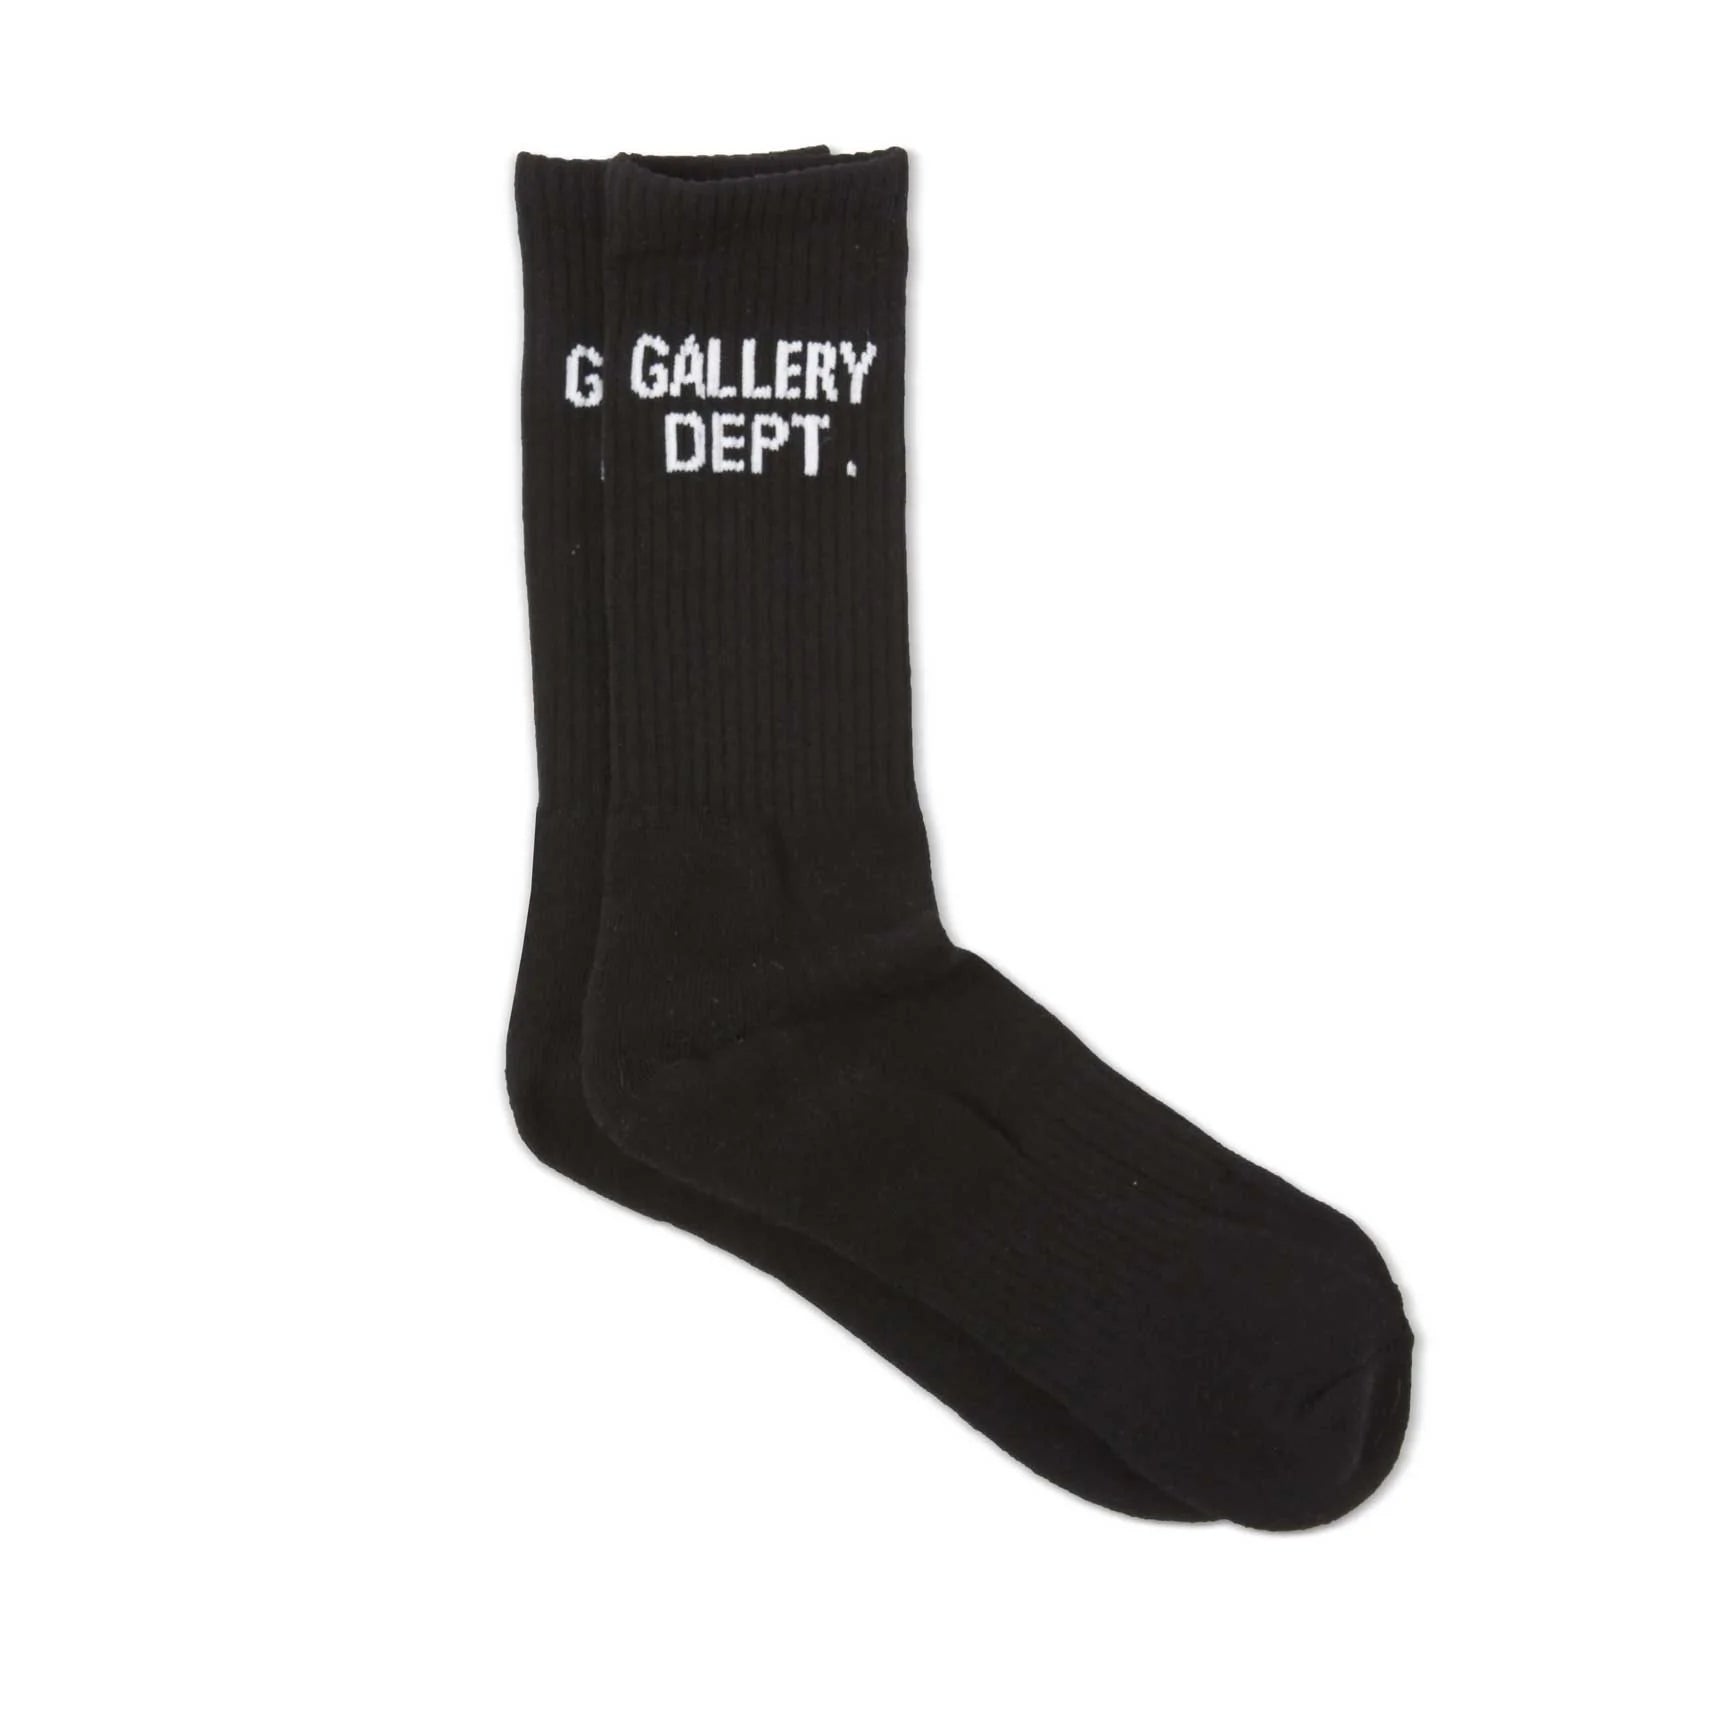 Gallery Dept. Clean Socks Black